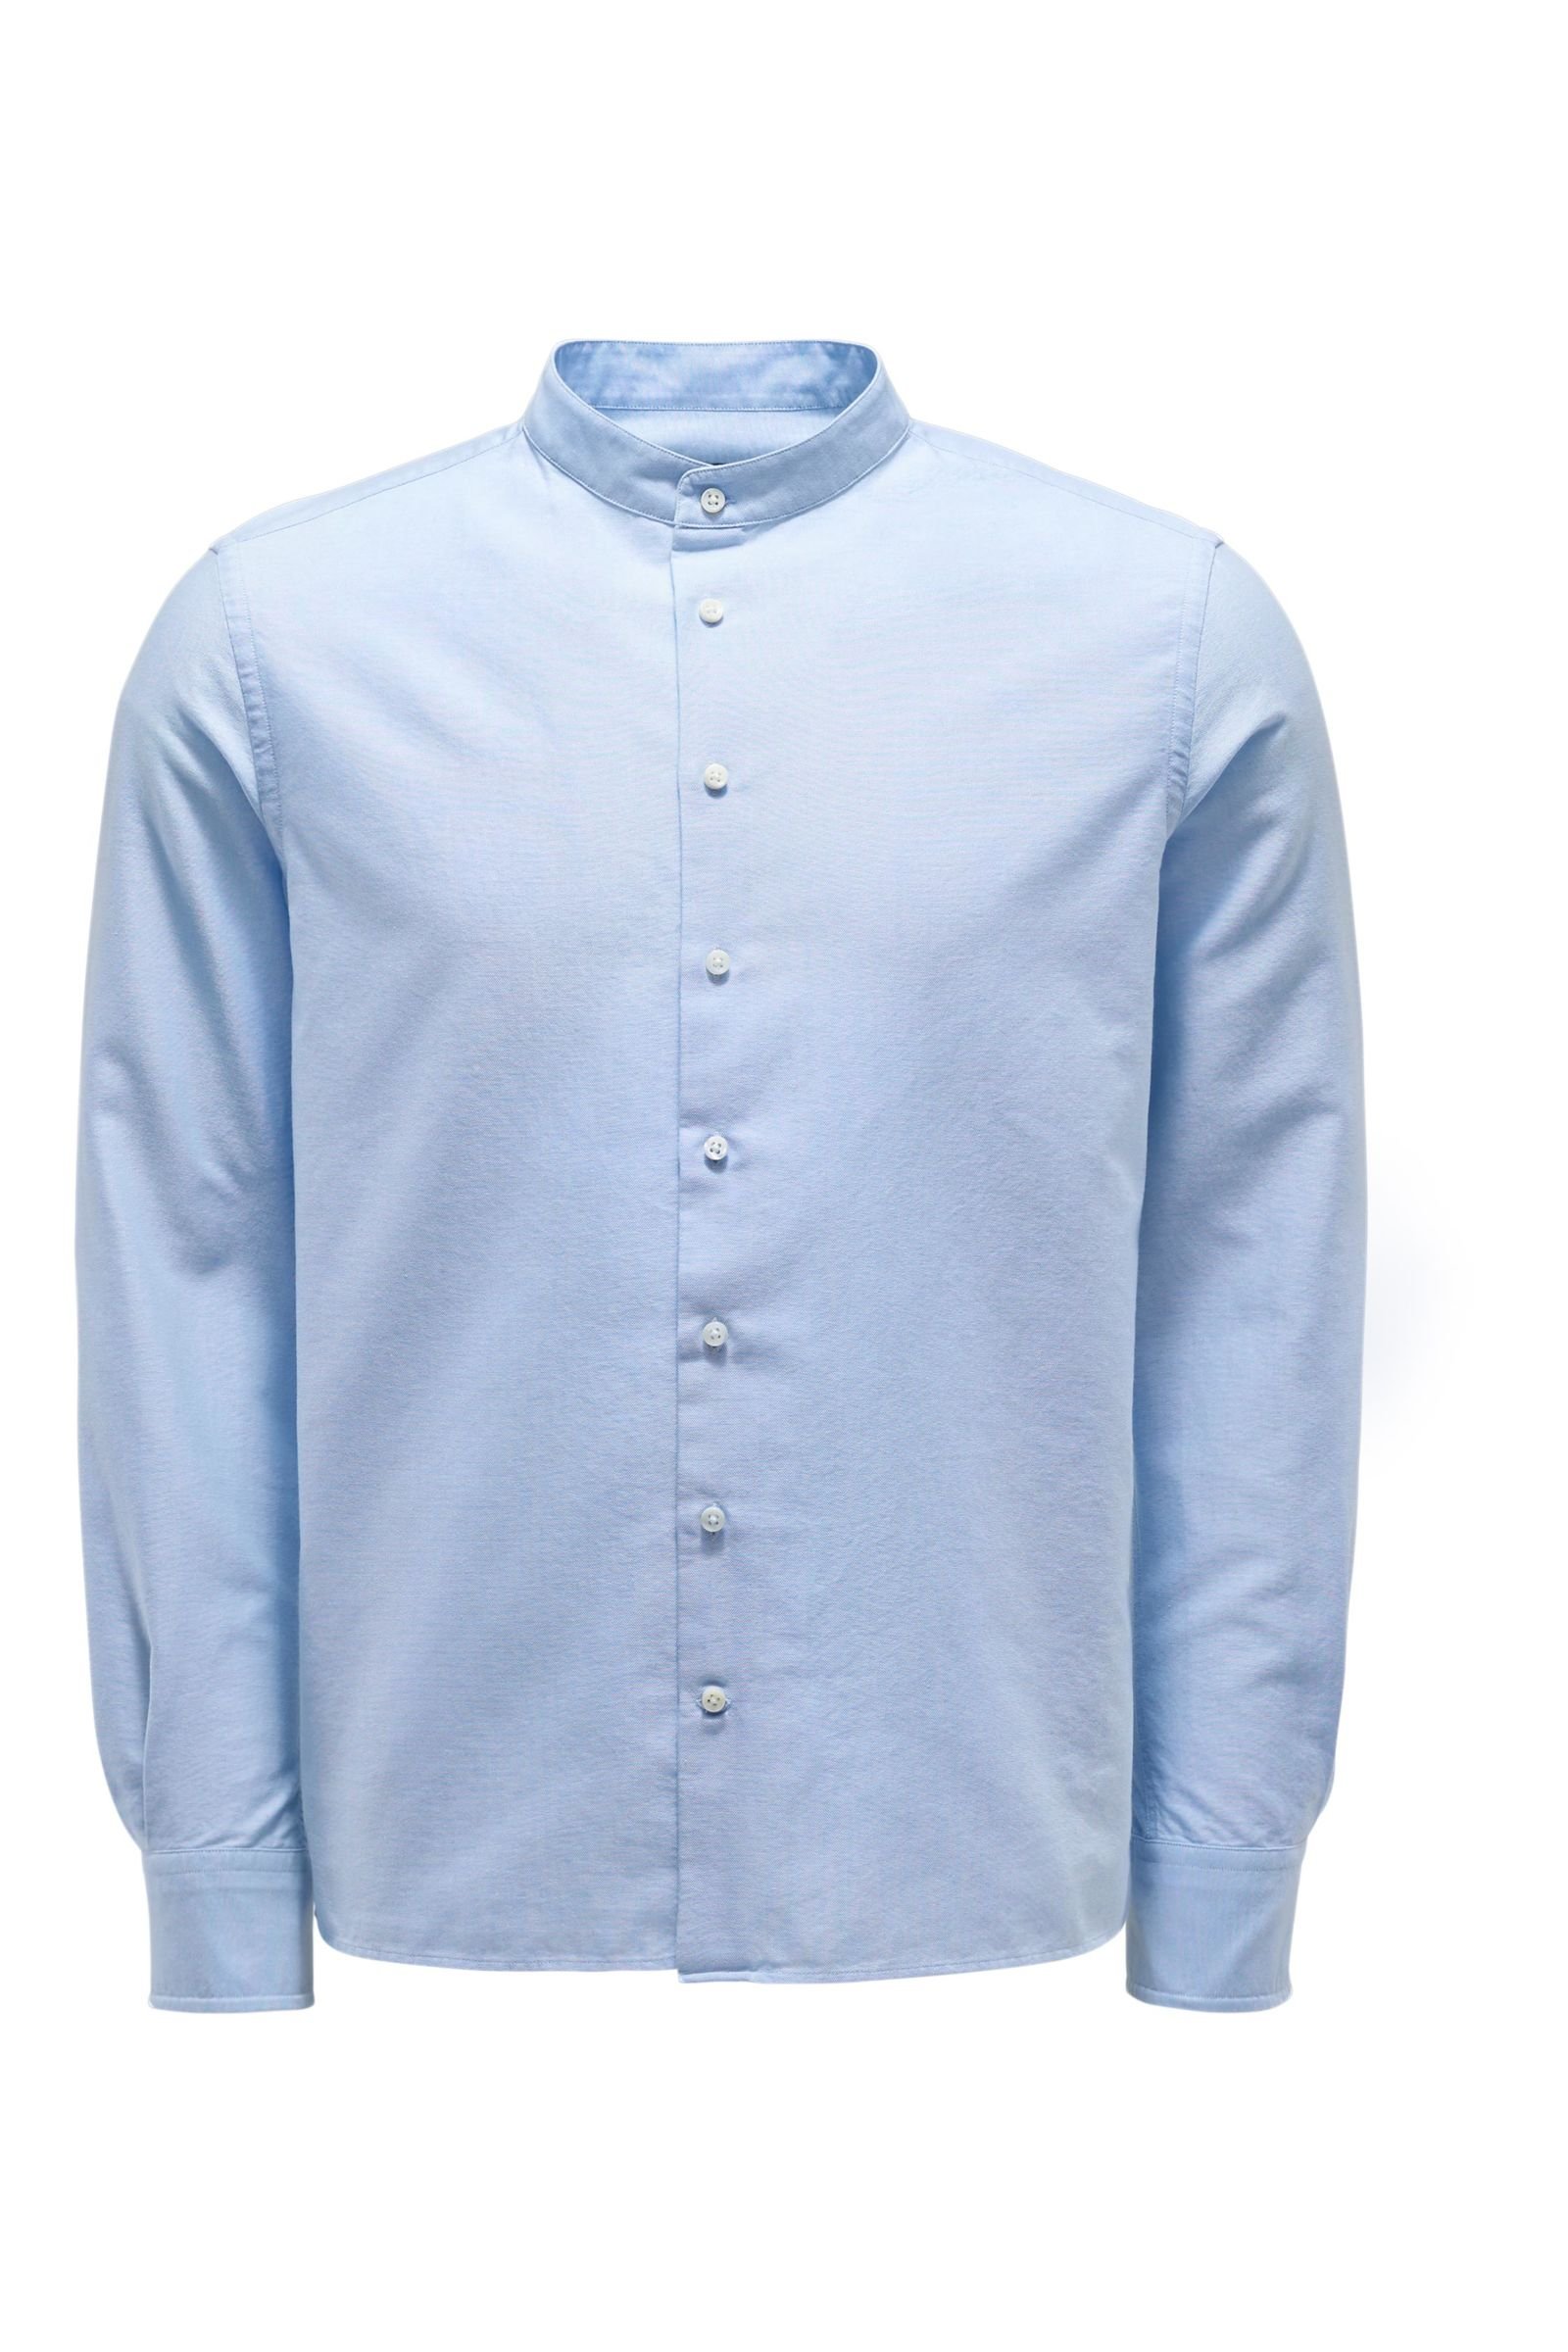 Oxfordhemd Grandad-Kragen hellblau